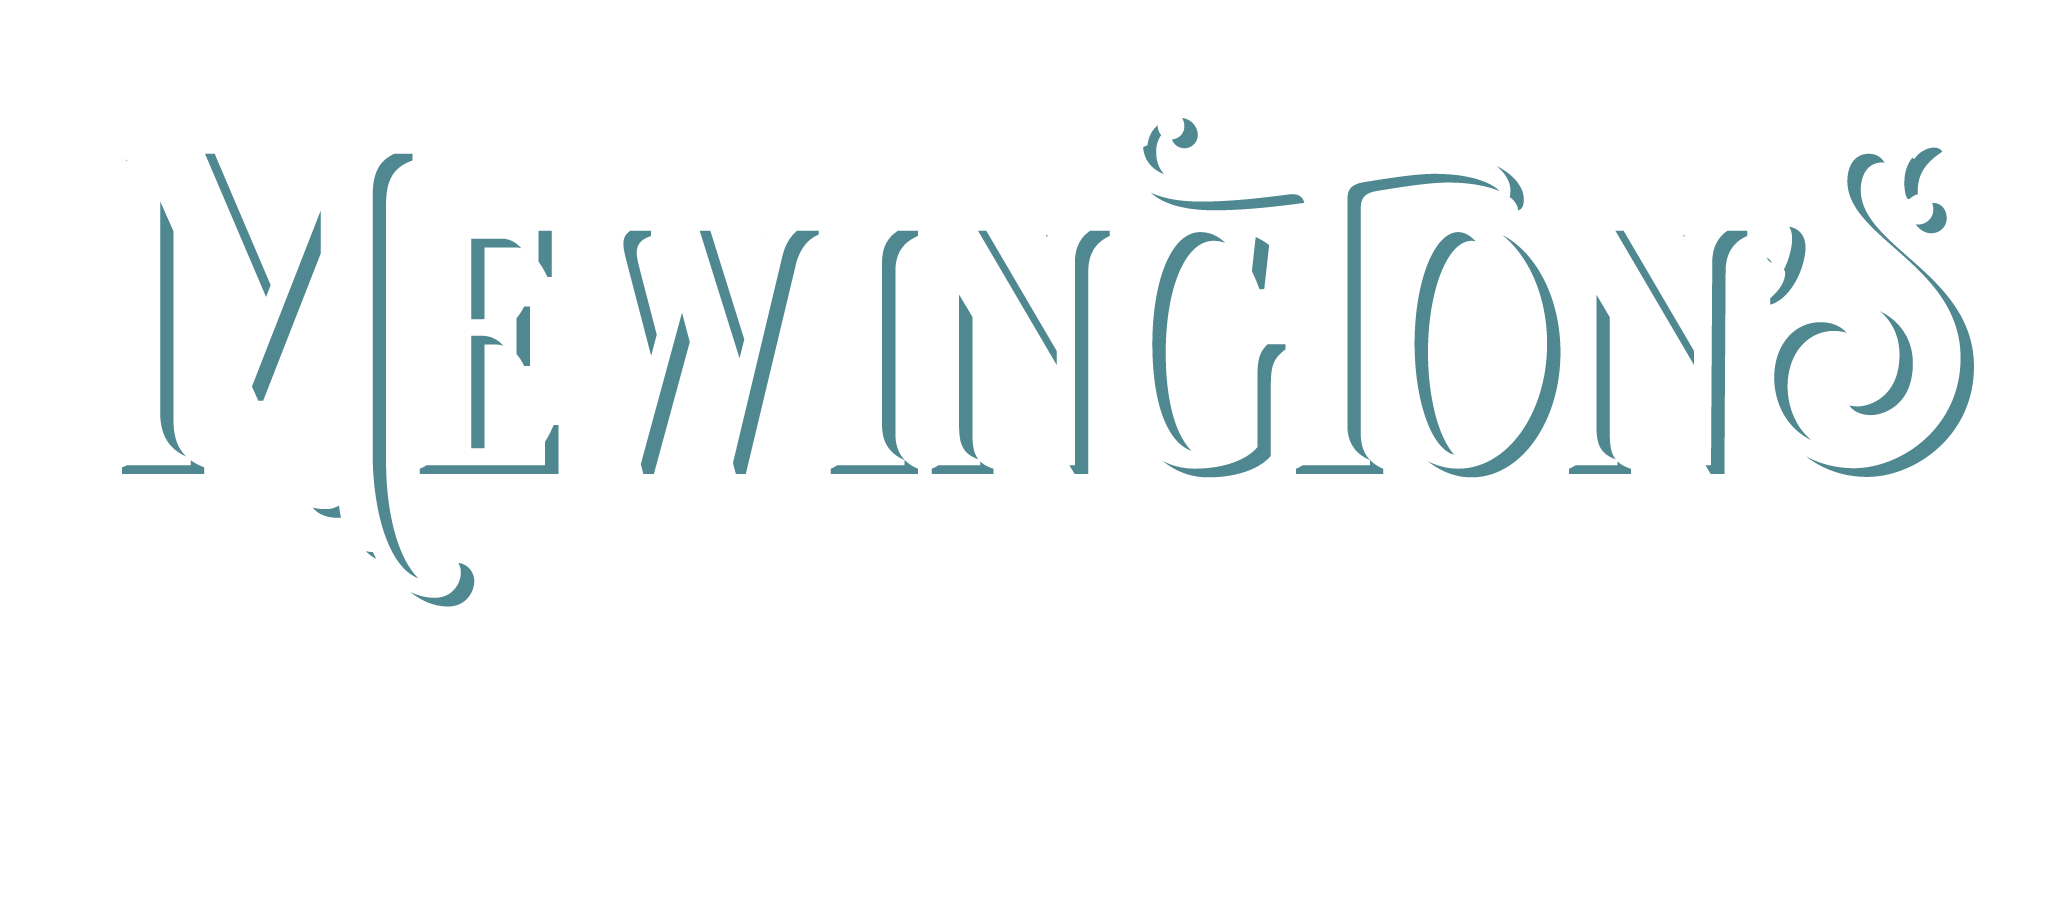 Mewington's Book Shoppe